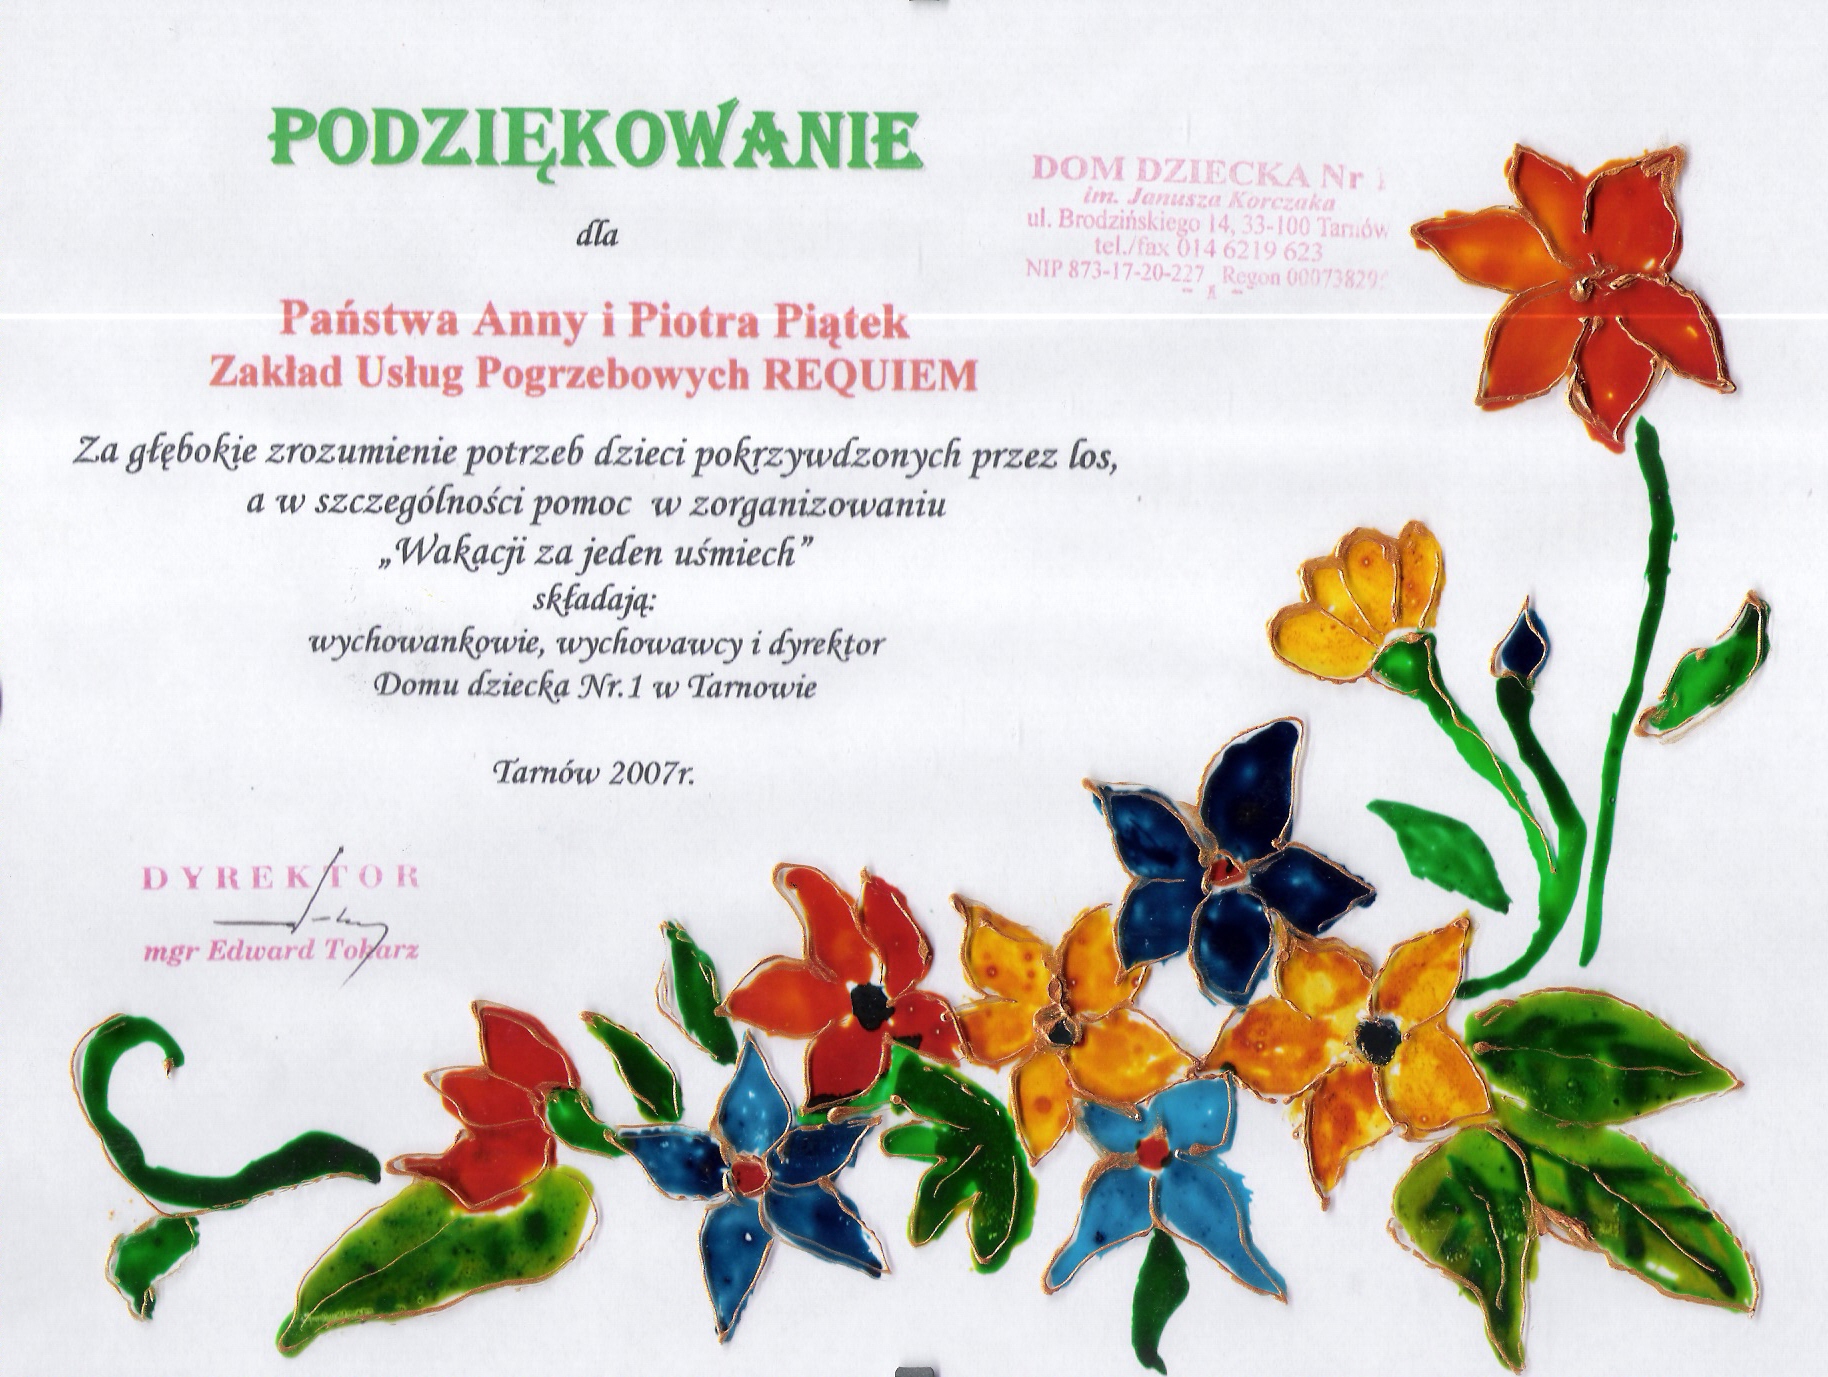 Podziekowanie-od-Domu-Dziecka-nr-1-w-Tarnowie-2007-r